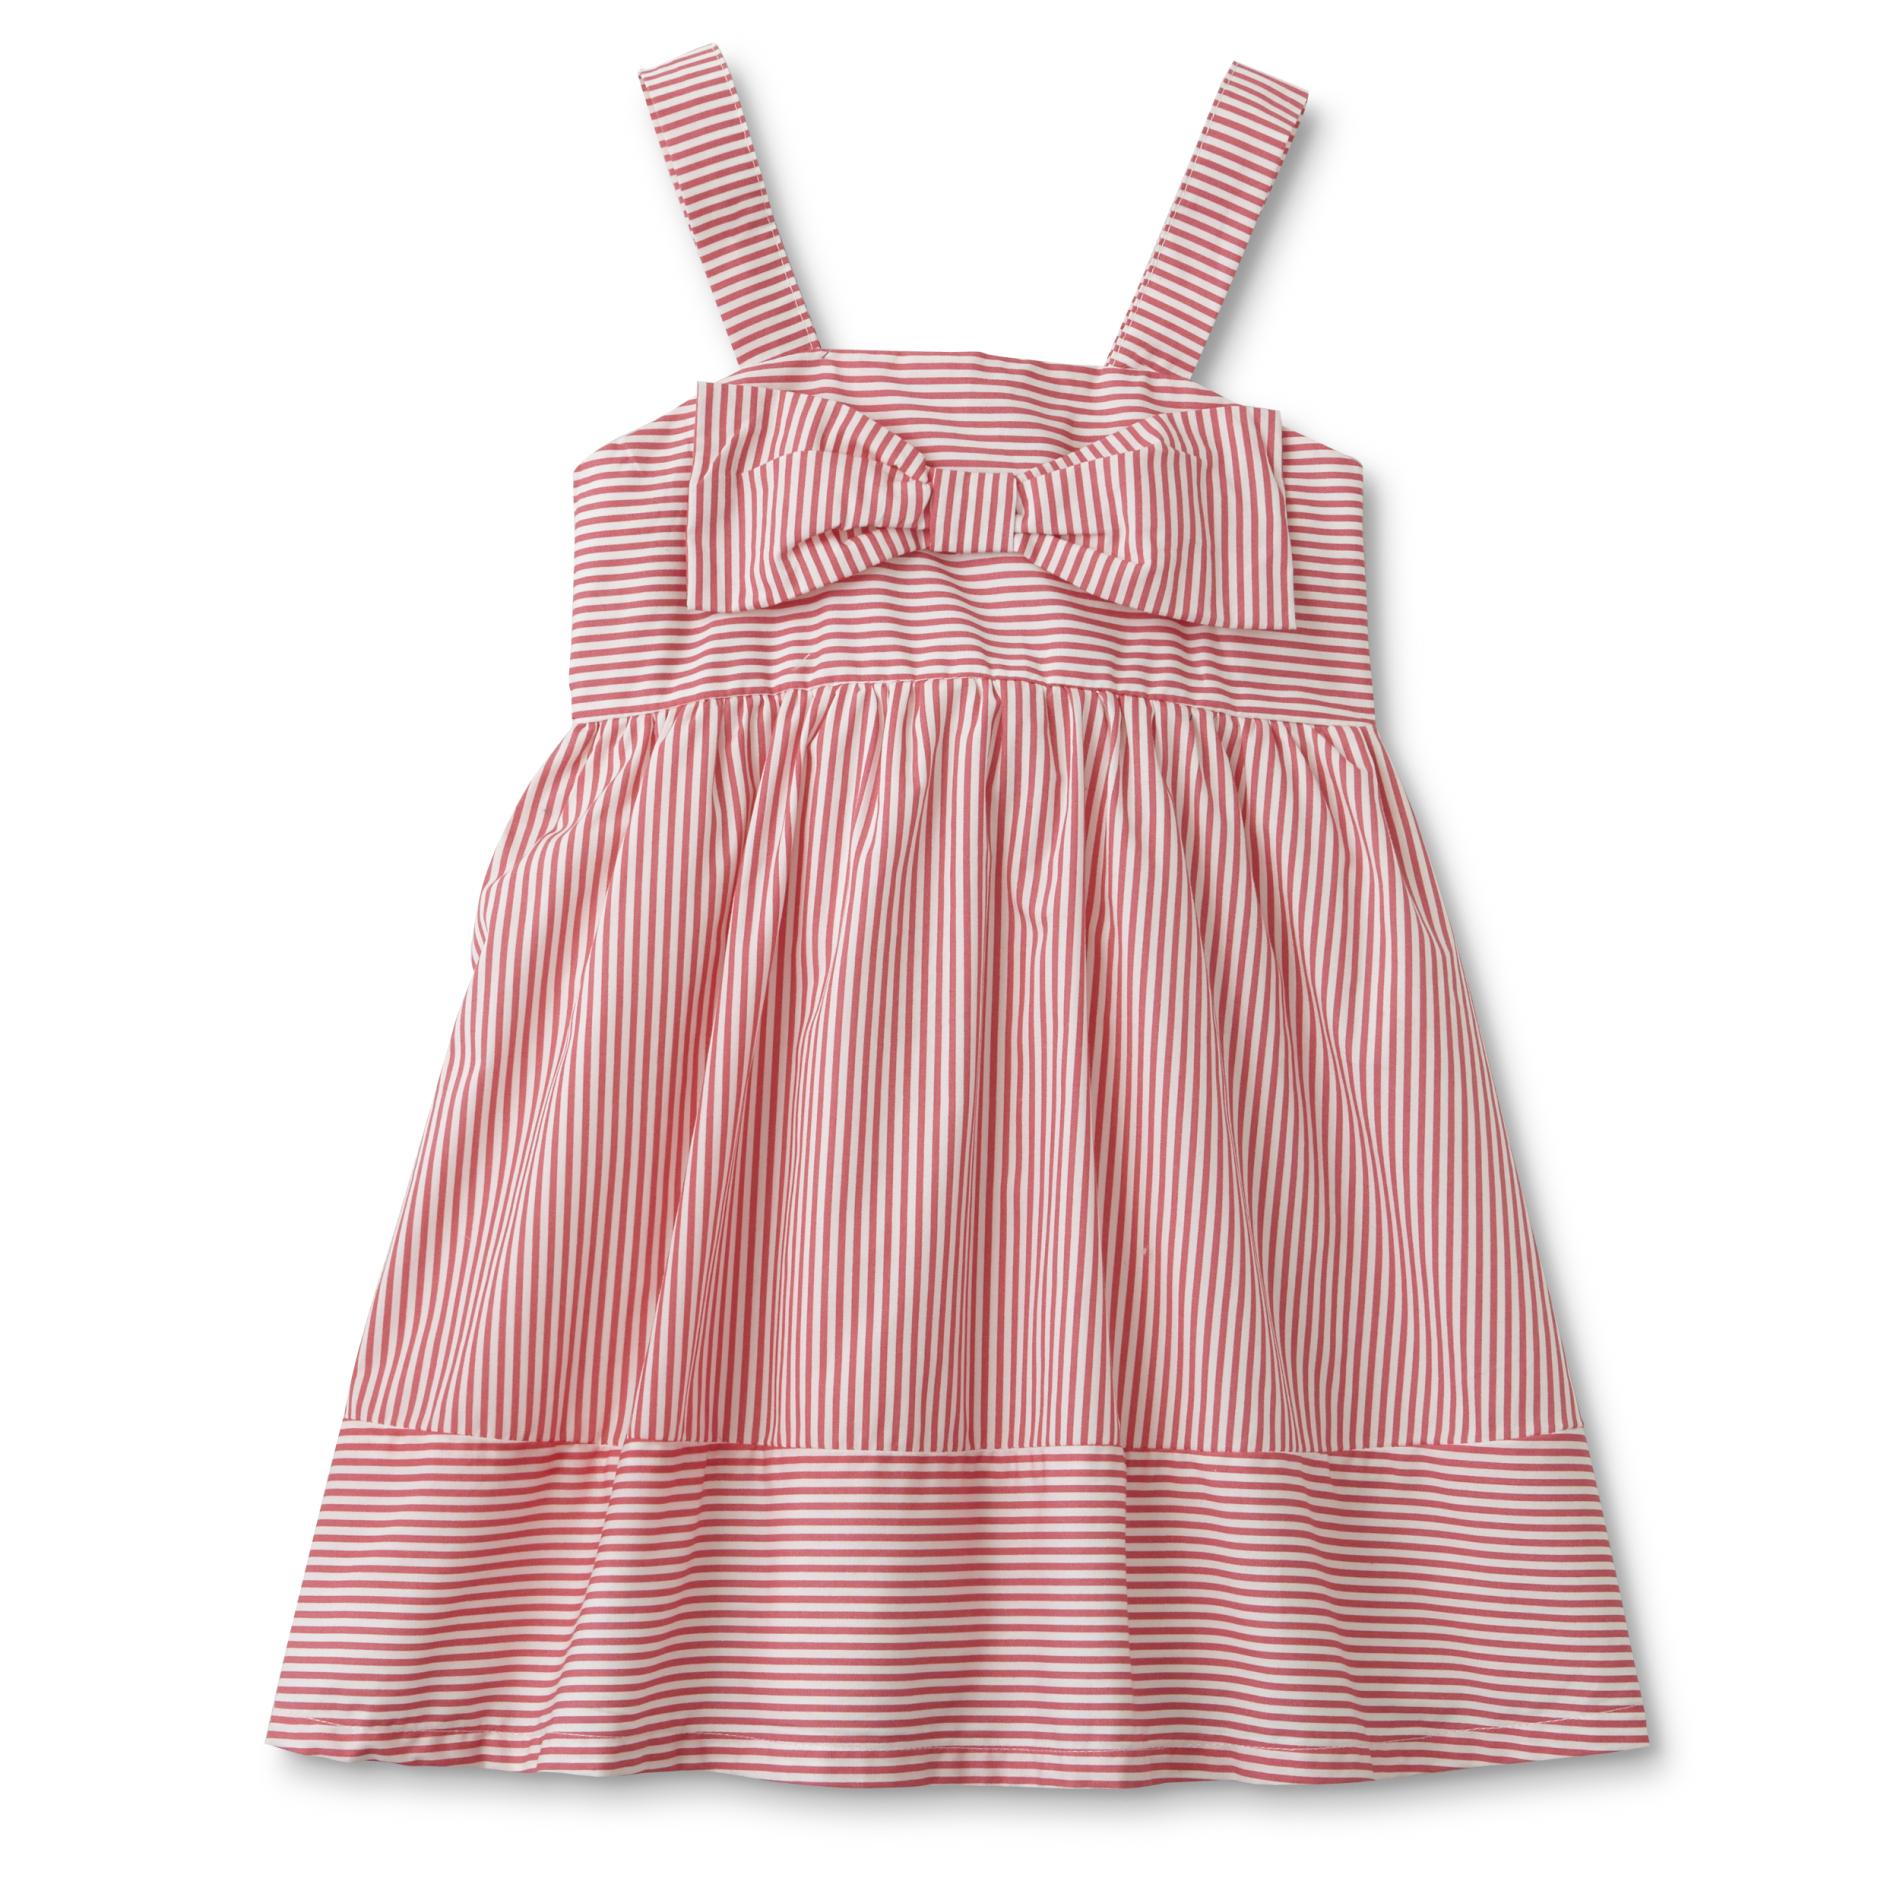 Toughskins Infant & Toddler Girls' Sundress - Striped